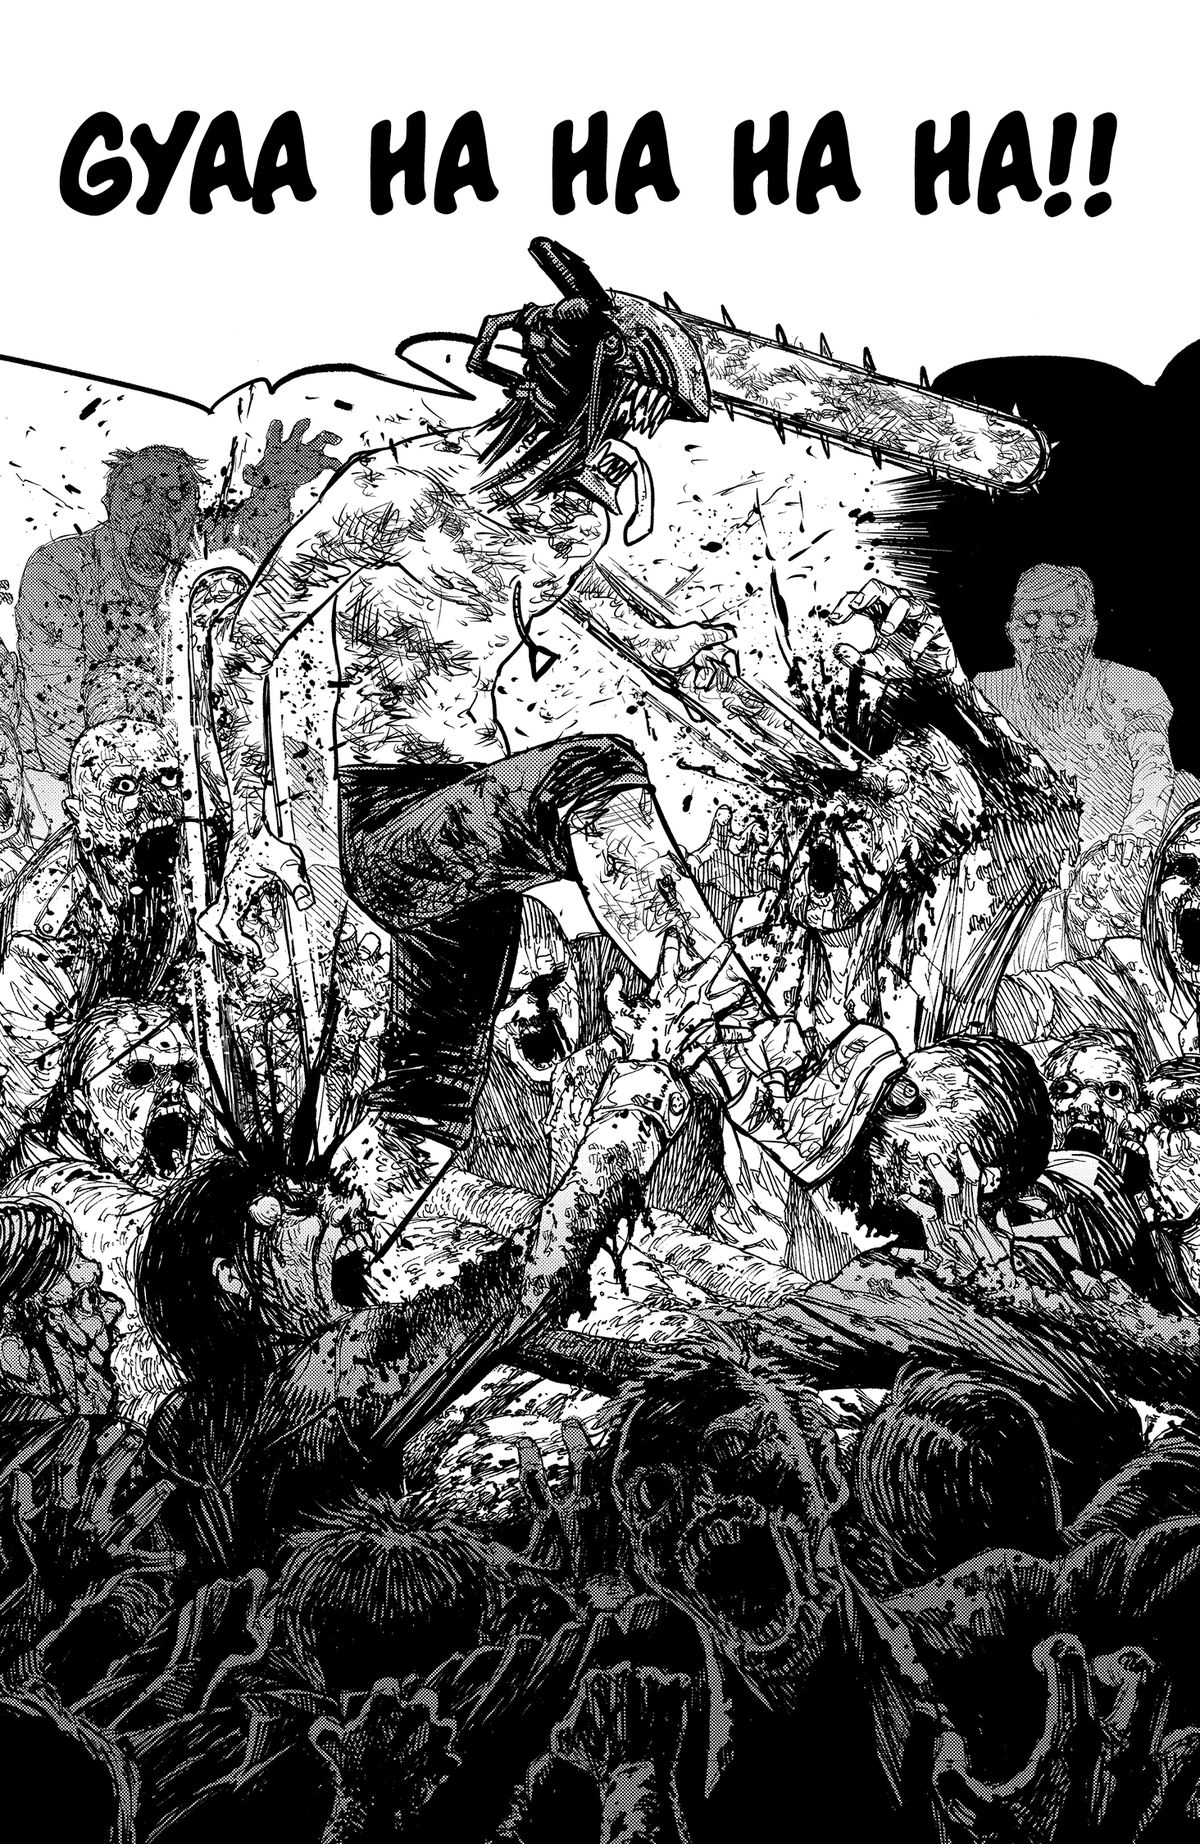 Denji, un uomo con una motosega al posto della testa con altre motoseghe attaccate alle braccia, squarcia dozzine di zombi, spruzzando sangue ovunque in Chainsaw Man volume 1.